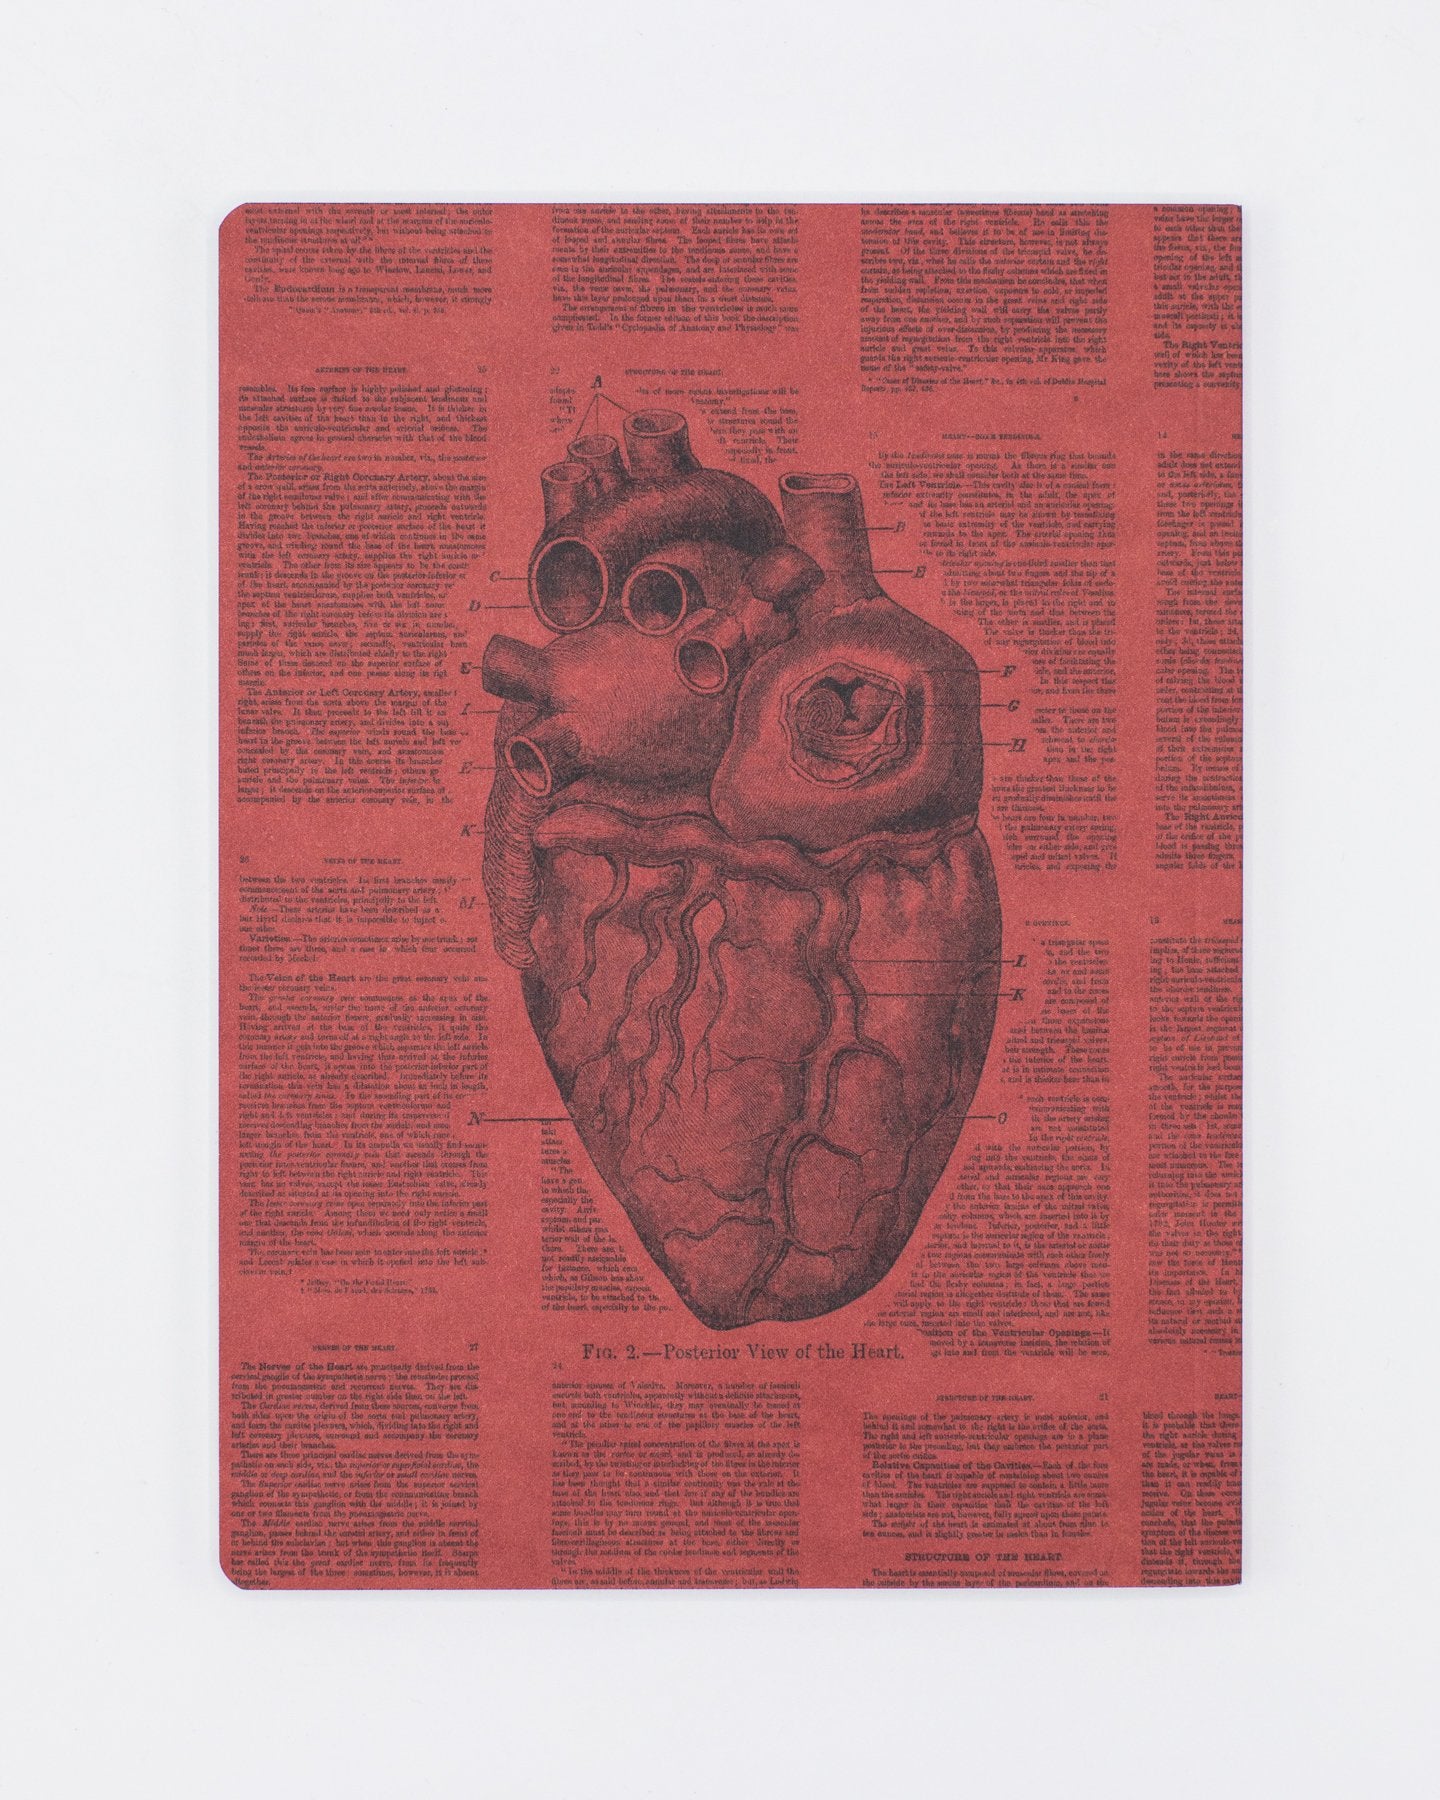 Couverture souple Coeur anatomique - Doublé